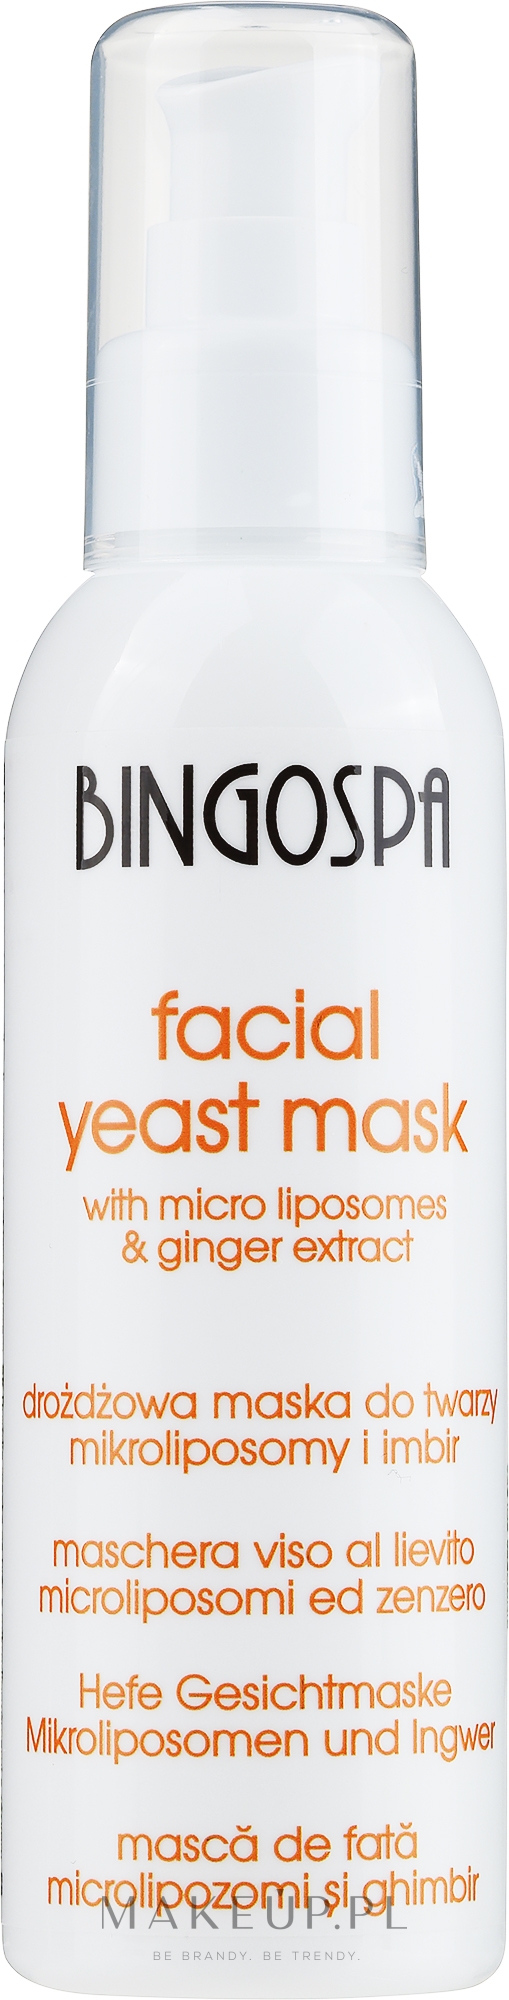 Drożdżowa maska do twarzy z wyciągiem z imbiru - BingoSpa Mask To Face With The Extract Of Ginger — Zdjęcie 150 g